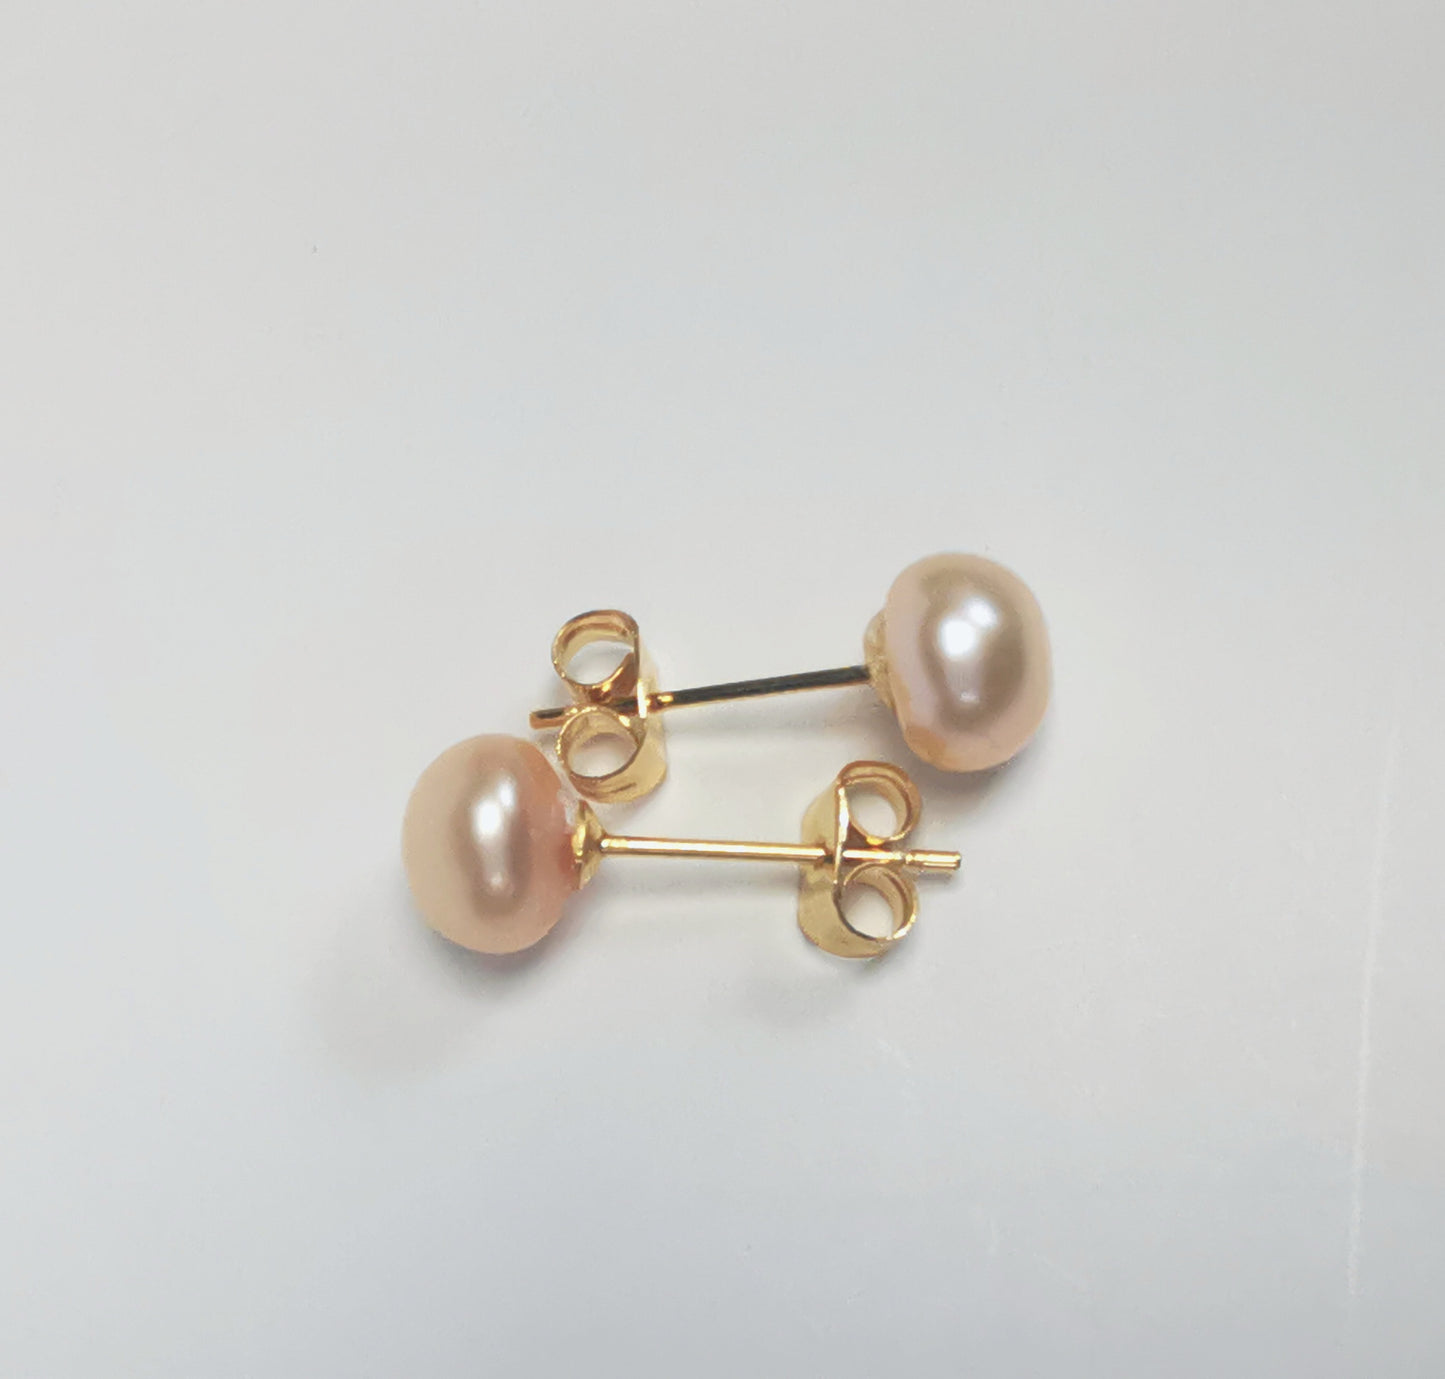 Boucles d'oreilles perles de culture rose 7mm sur clous plaqués or. Présentées cote à cote à l'horizontale, boucle de dessus perle à droite, celle de dessous, perle à gauche sur un fond blanc. Vue de dessus.